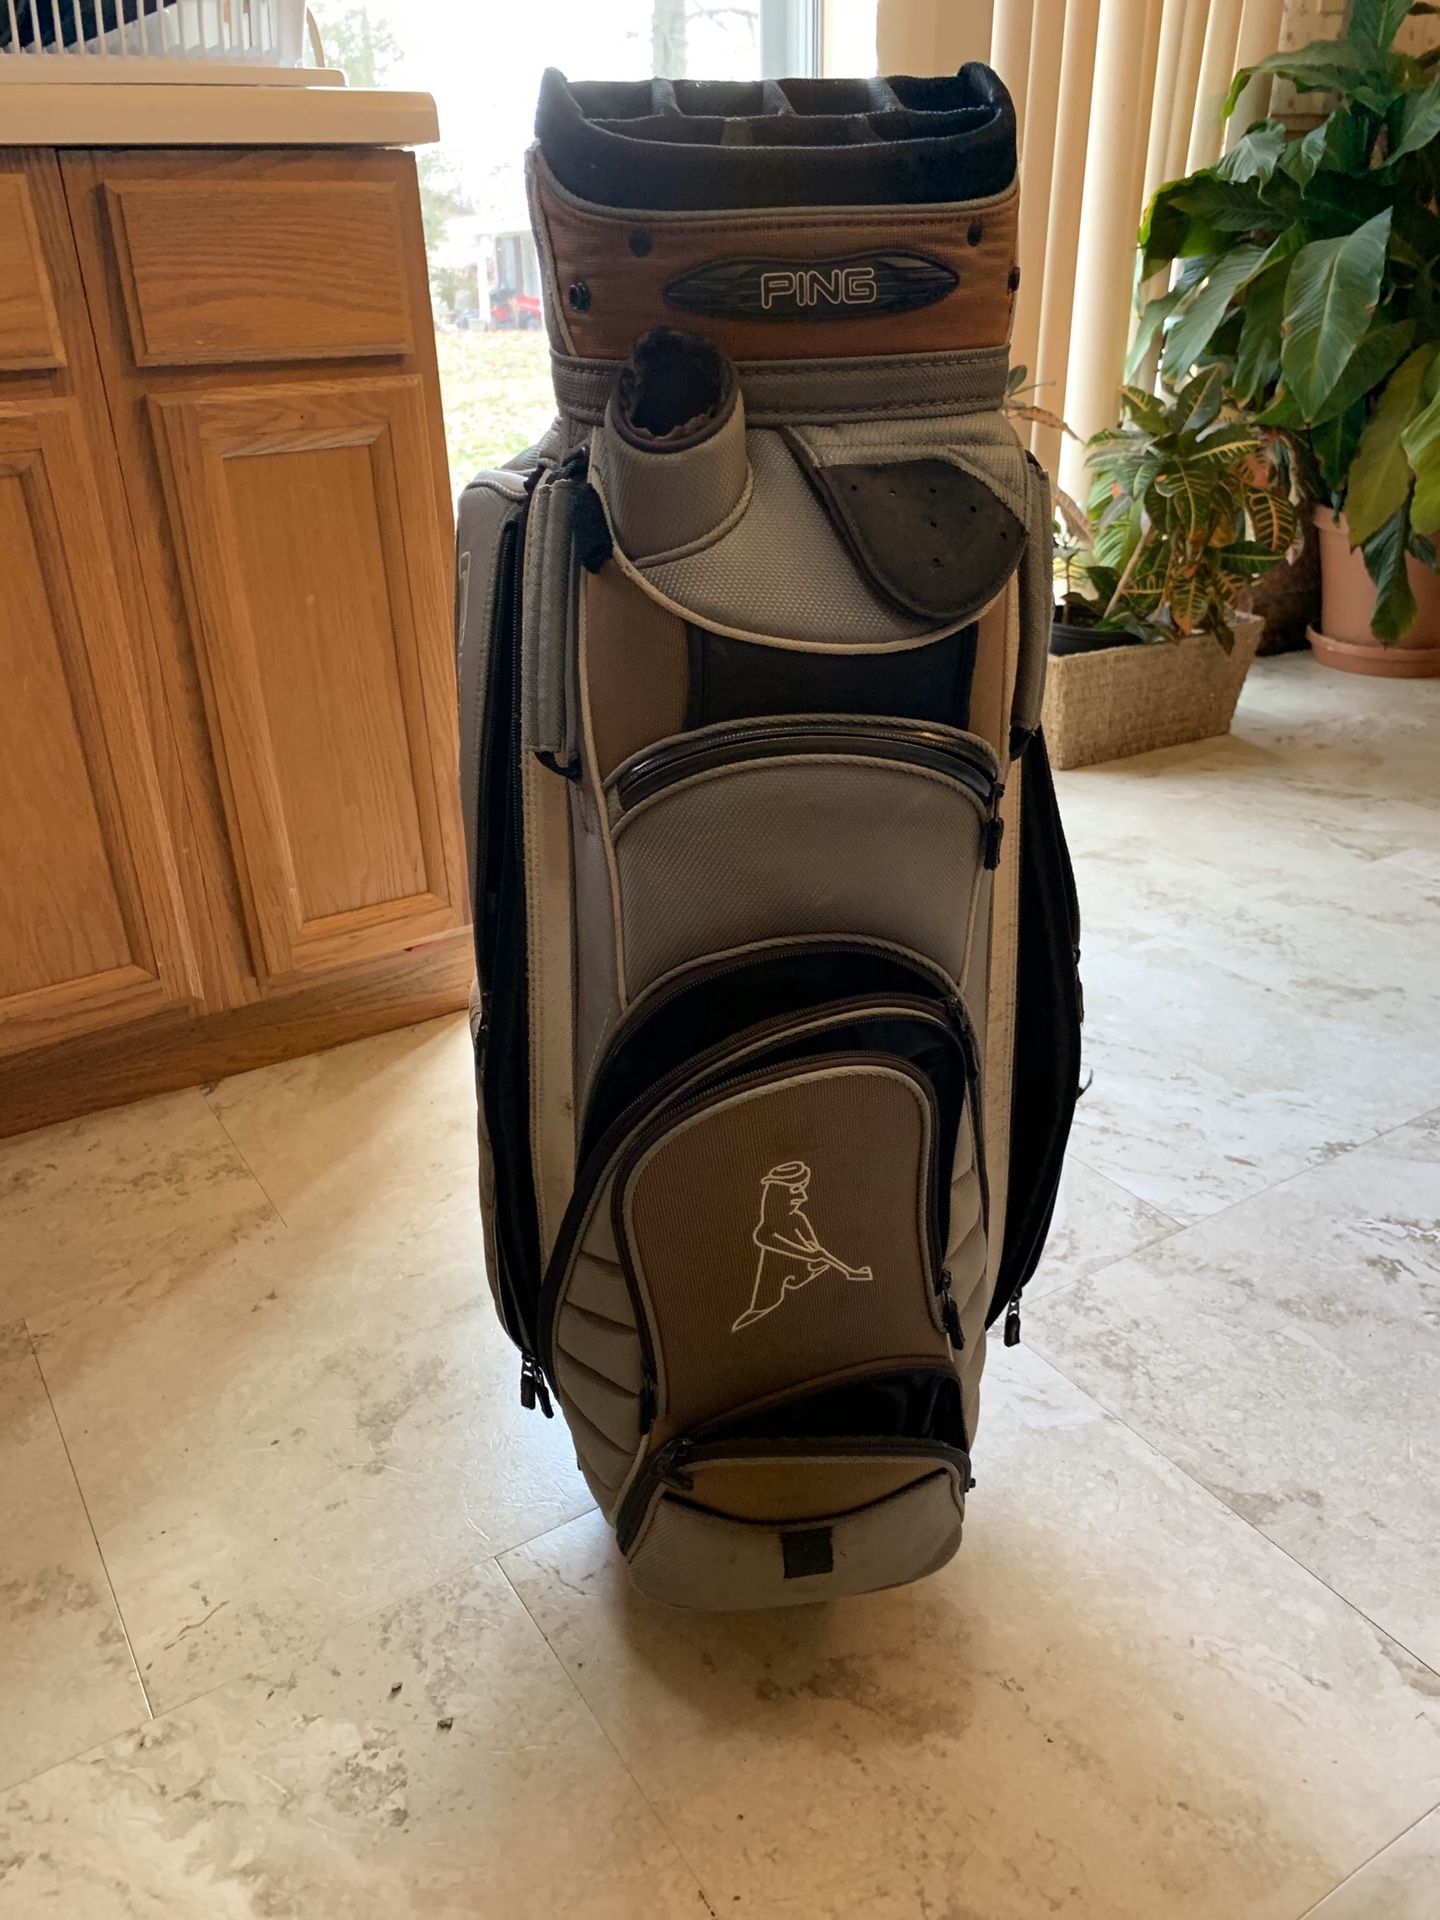 Ping golf bag